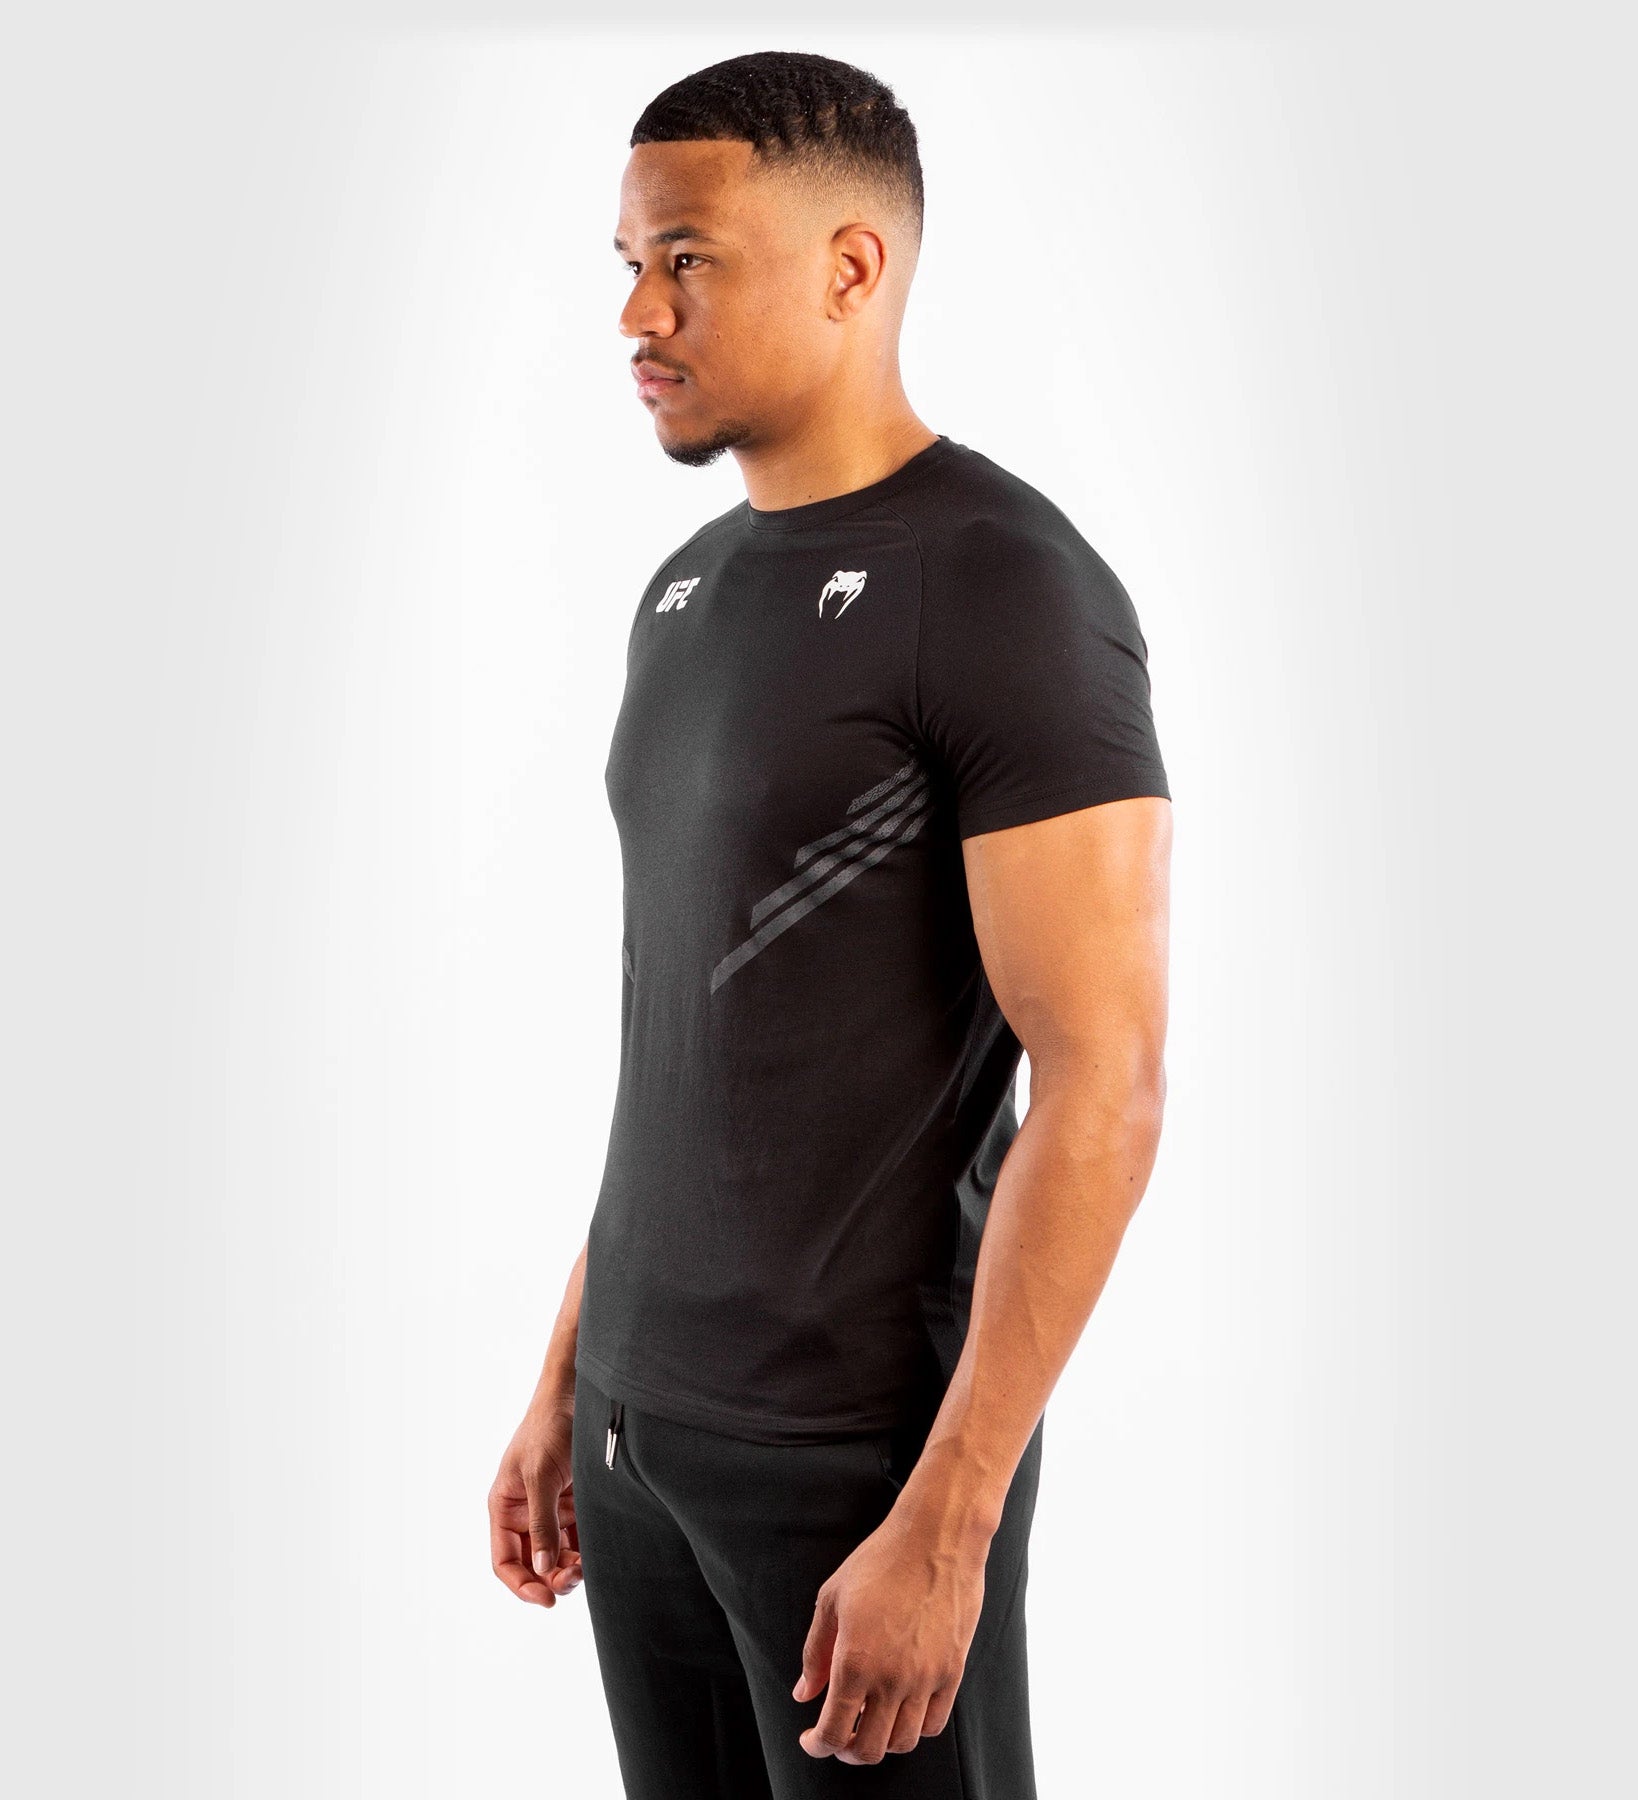 UFC Venum T-shirt - Zwart